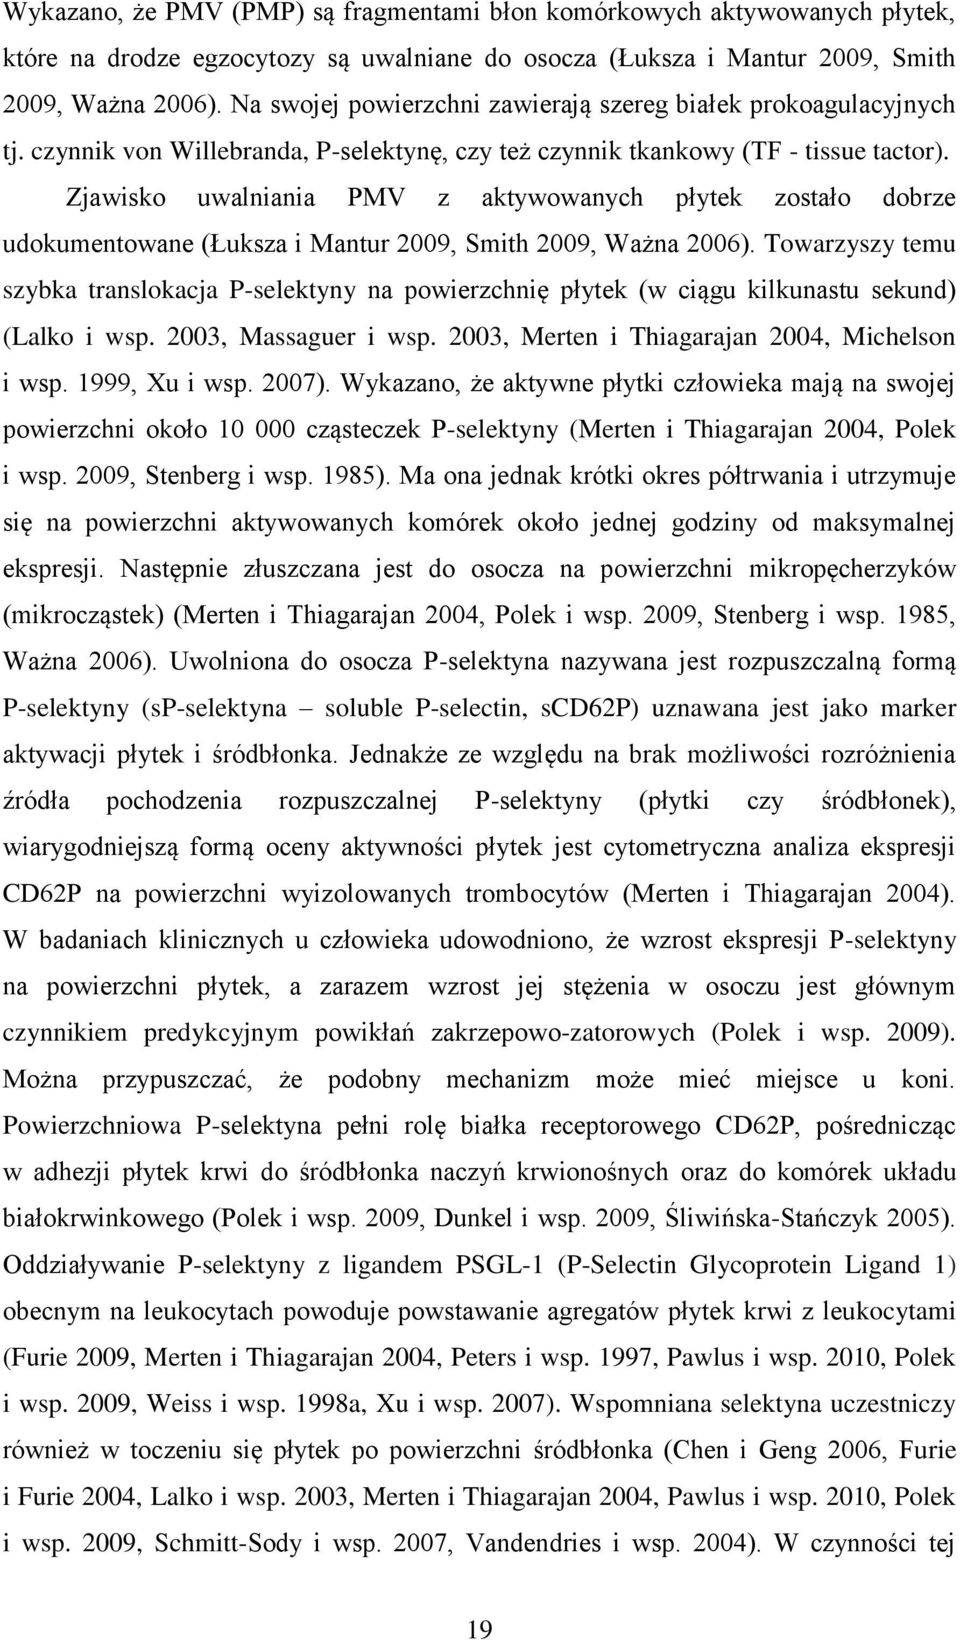 Zjawisko uwalniania PMV z aktywowanych płytek zostało dobrze udokumentowane (Łuksza i Mantur 2009, Smith 2009, Ważna 2006).